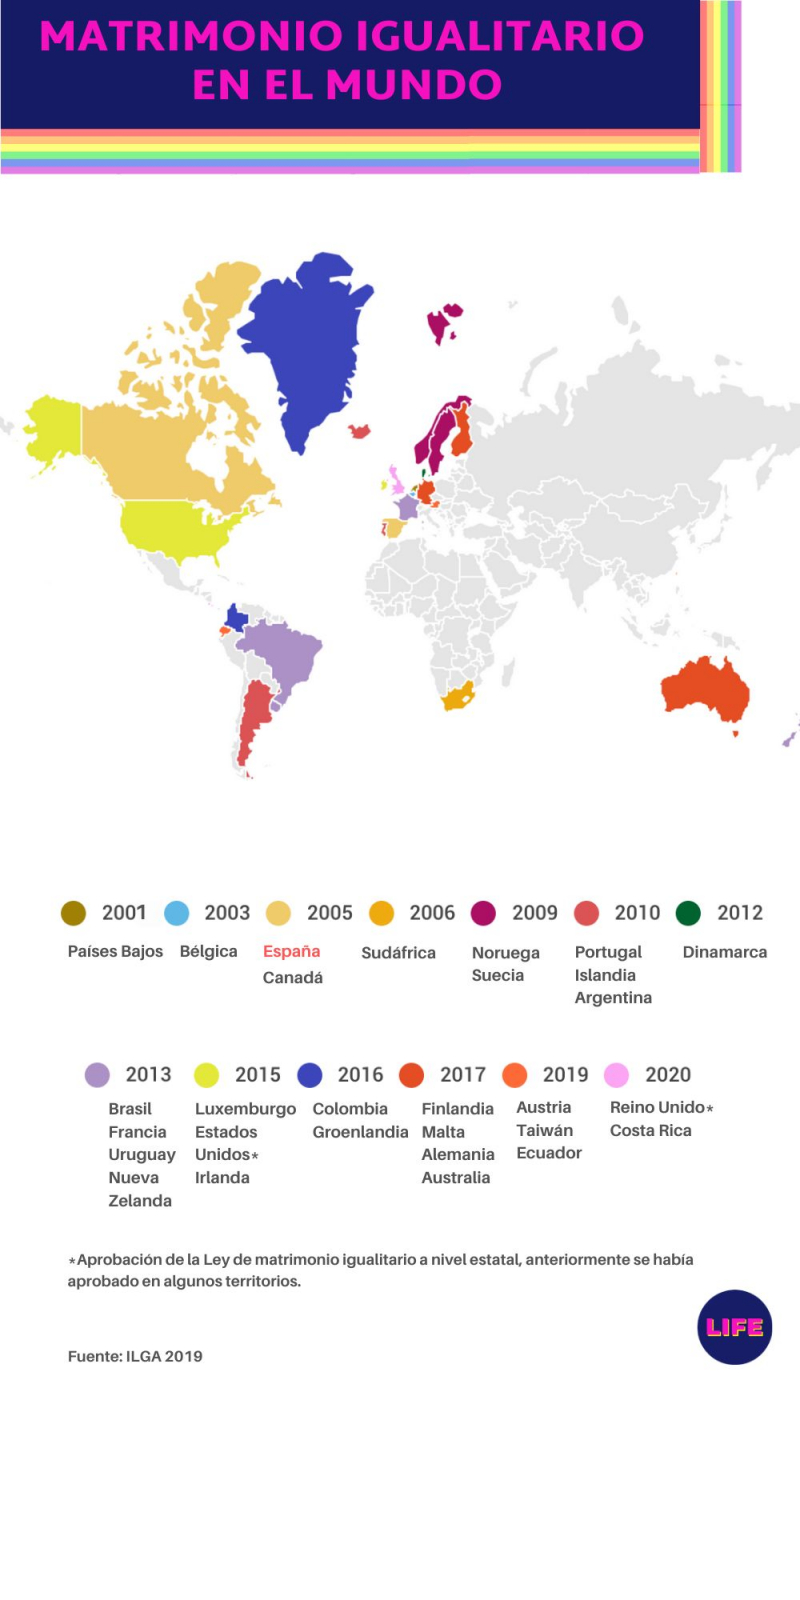 Mapa de países donde está aprobado el matrimonio igualitario, por año.